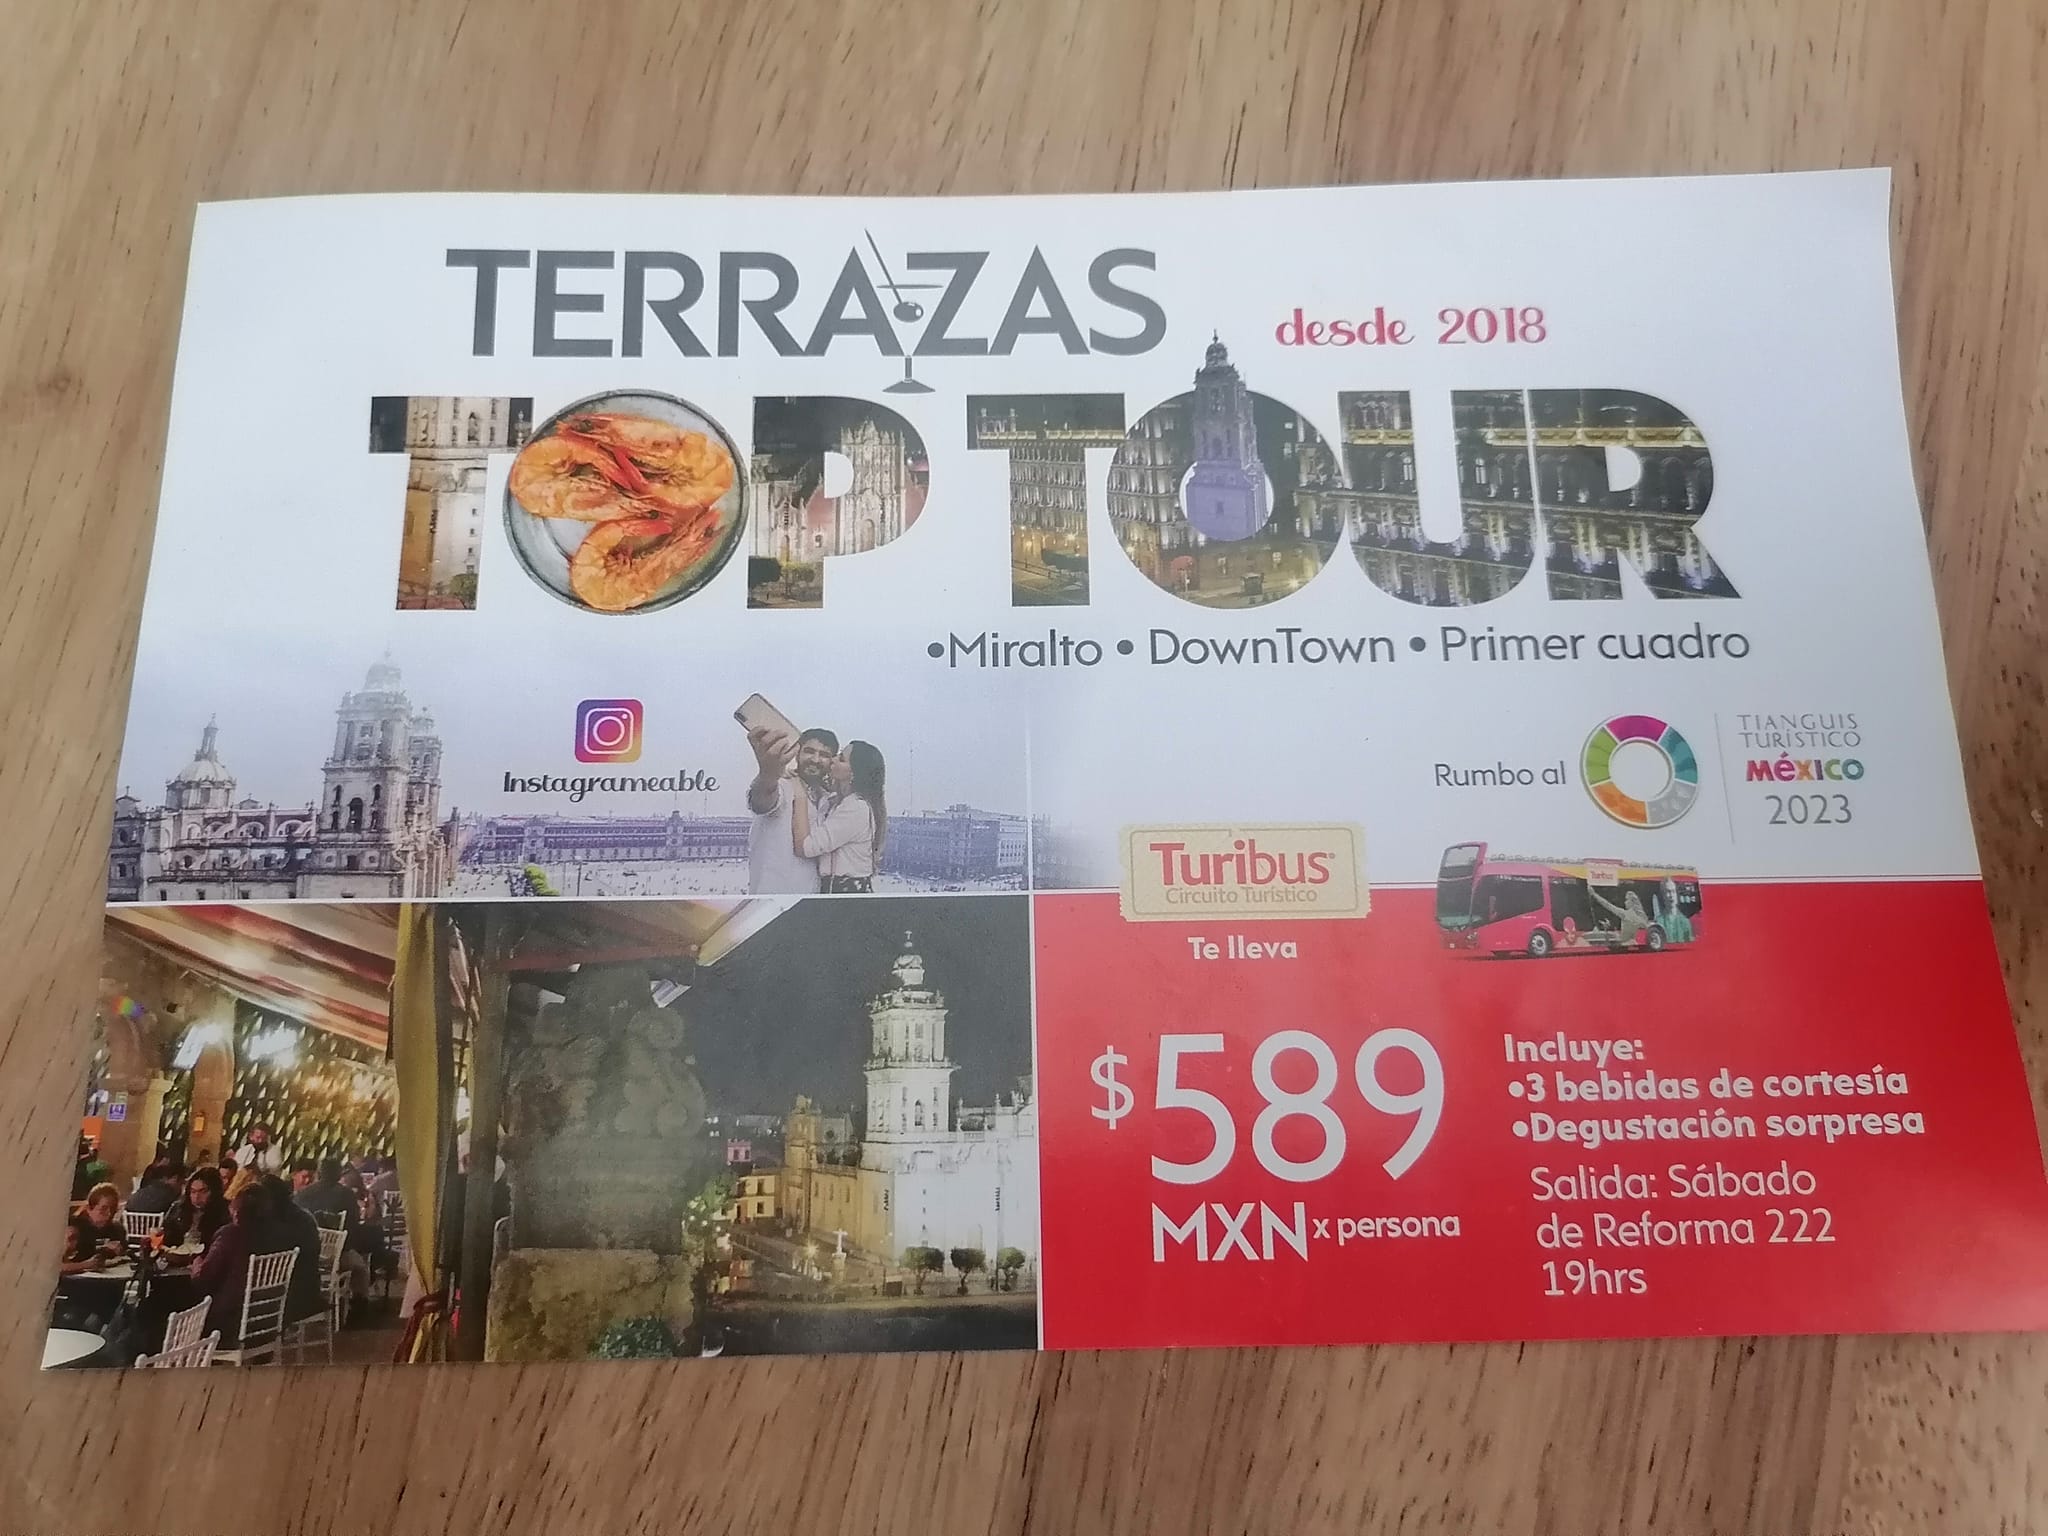 TOUR DE TURIBUS TERRAZAS TOP TOUR